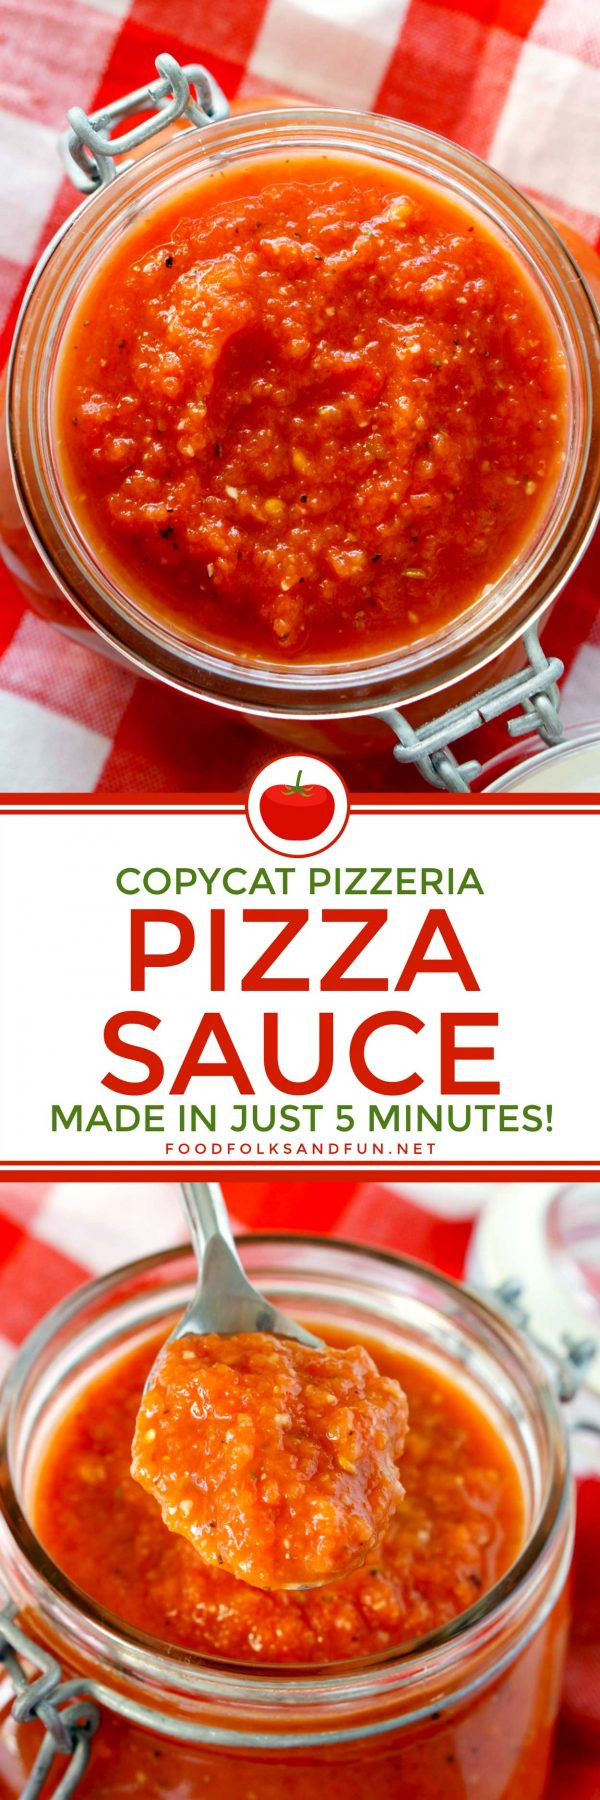 Pizza Sauce Recipe Quick
 Copycat Pizzeria Pizza Sauce Recipe • Food Folks and Fun